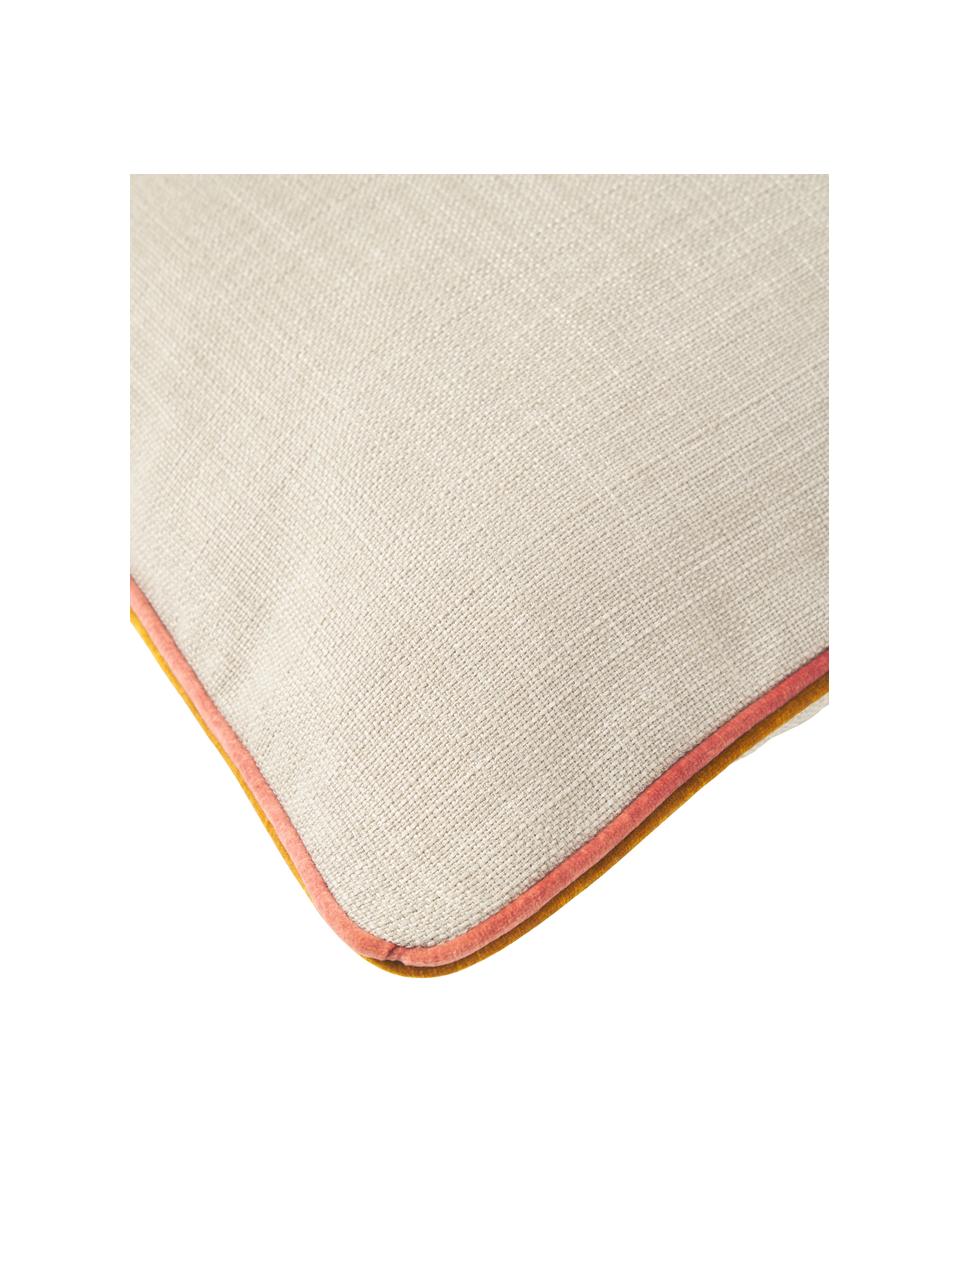 Kissenhülle Cressida in Beige mit zweifarbiger Kederumrandung, 100 % Polyester, Beige, B 45 x L 45 cm